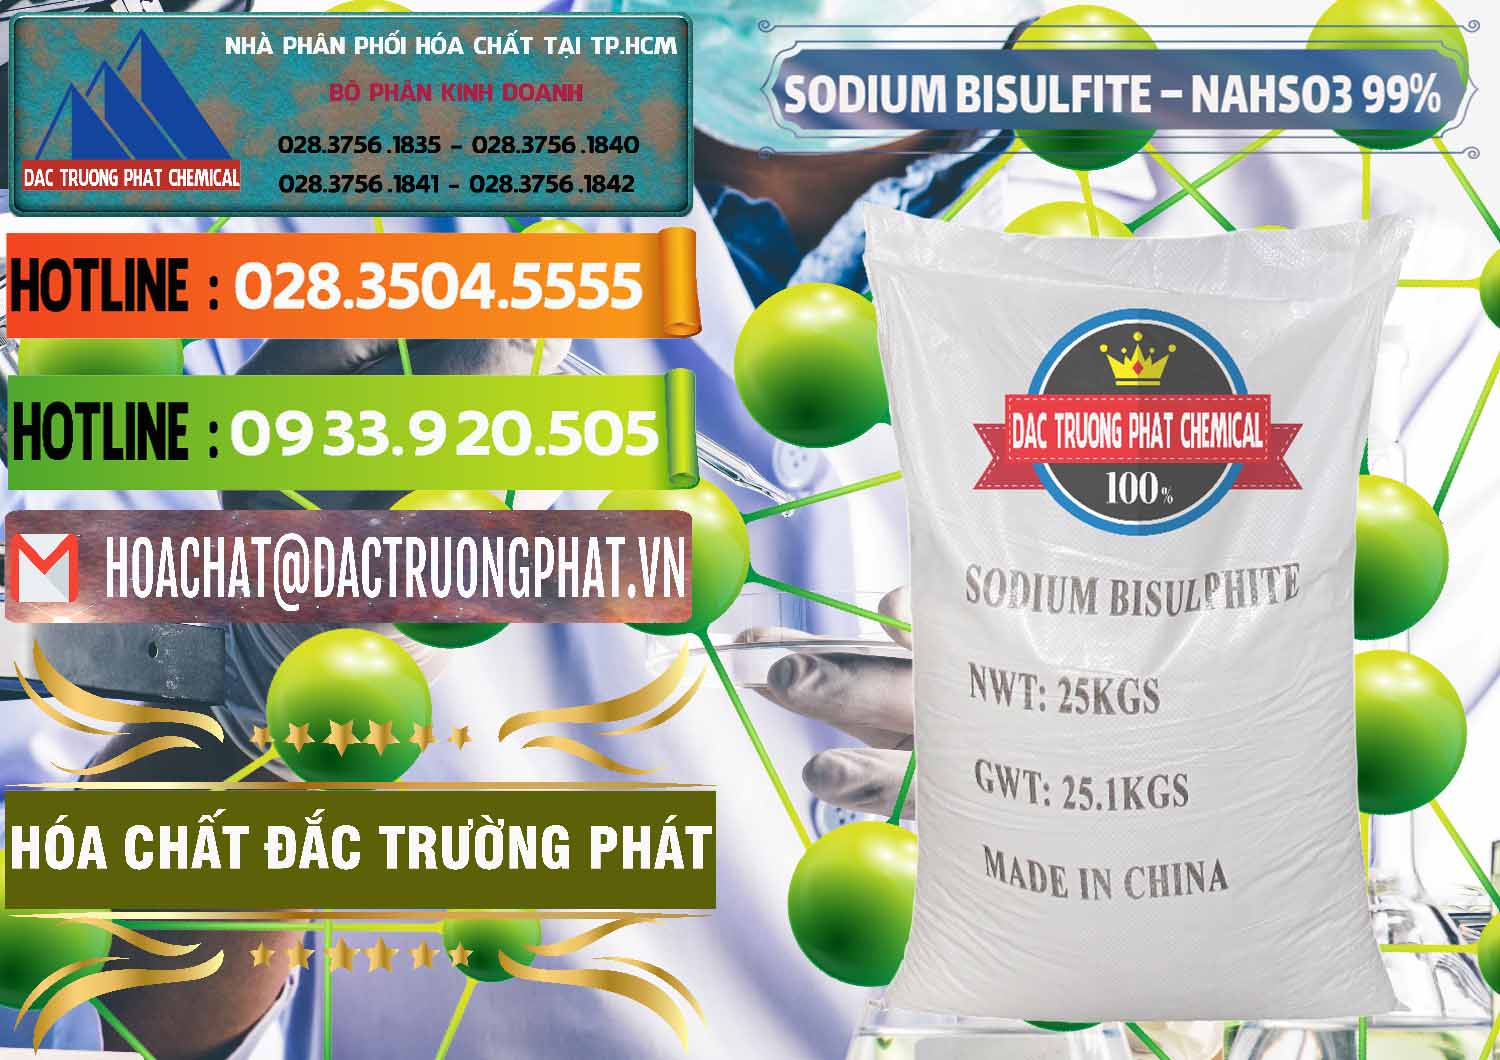 Chuyên cung cấp ( bán ) Sodium Bisulfite – NAHSO3 Trung Quốc China - 0140 - Cty cung cấp ( phân phối ) hóa chất tại TP.HCM - cungcaphoachat.com.vn